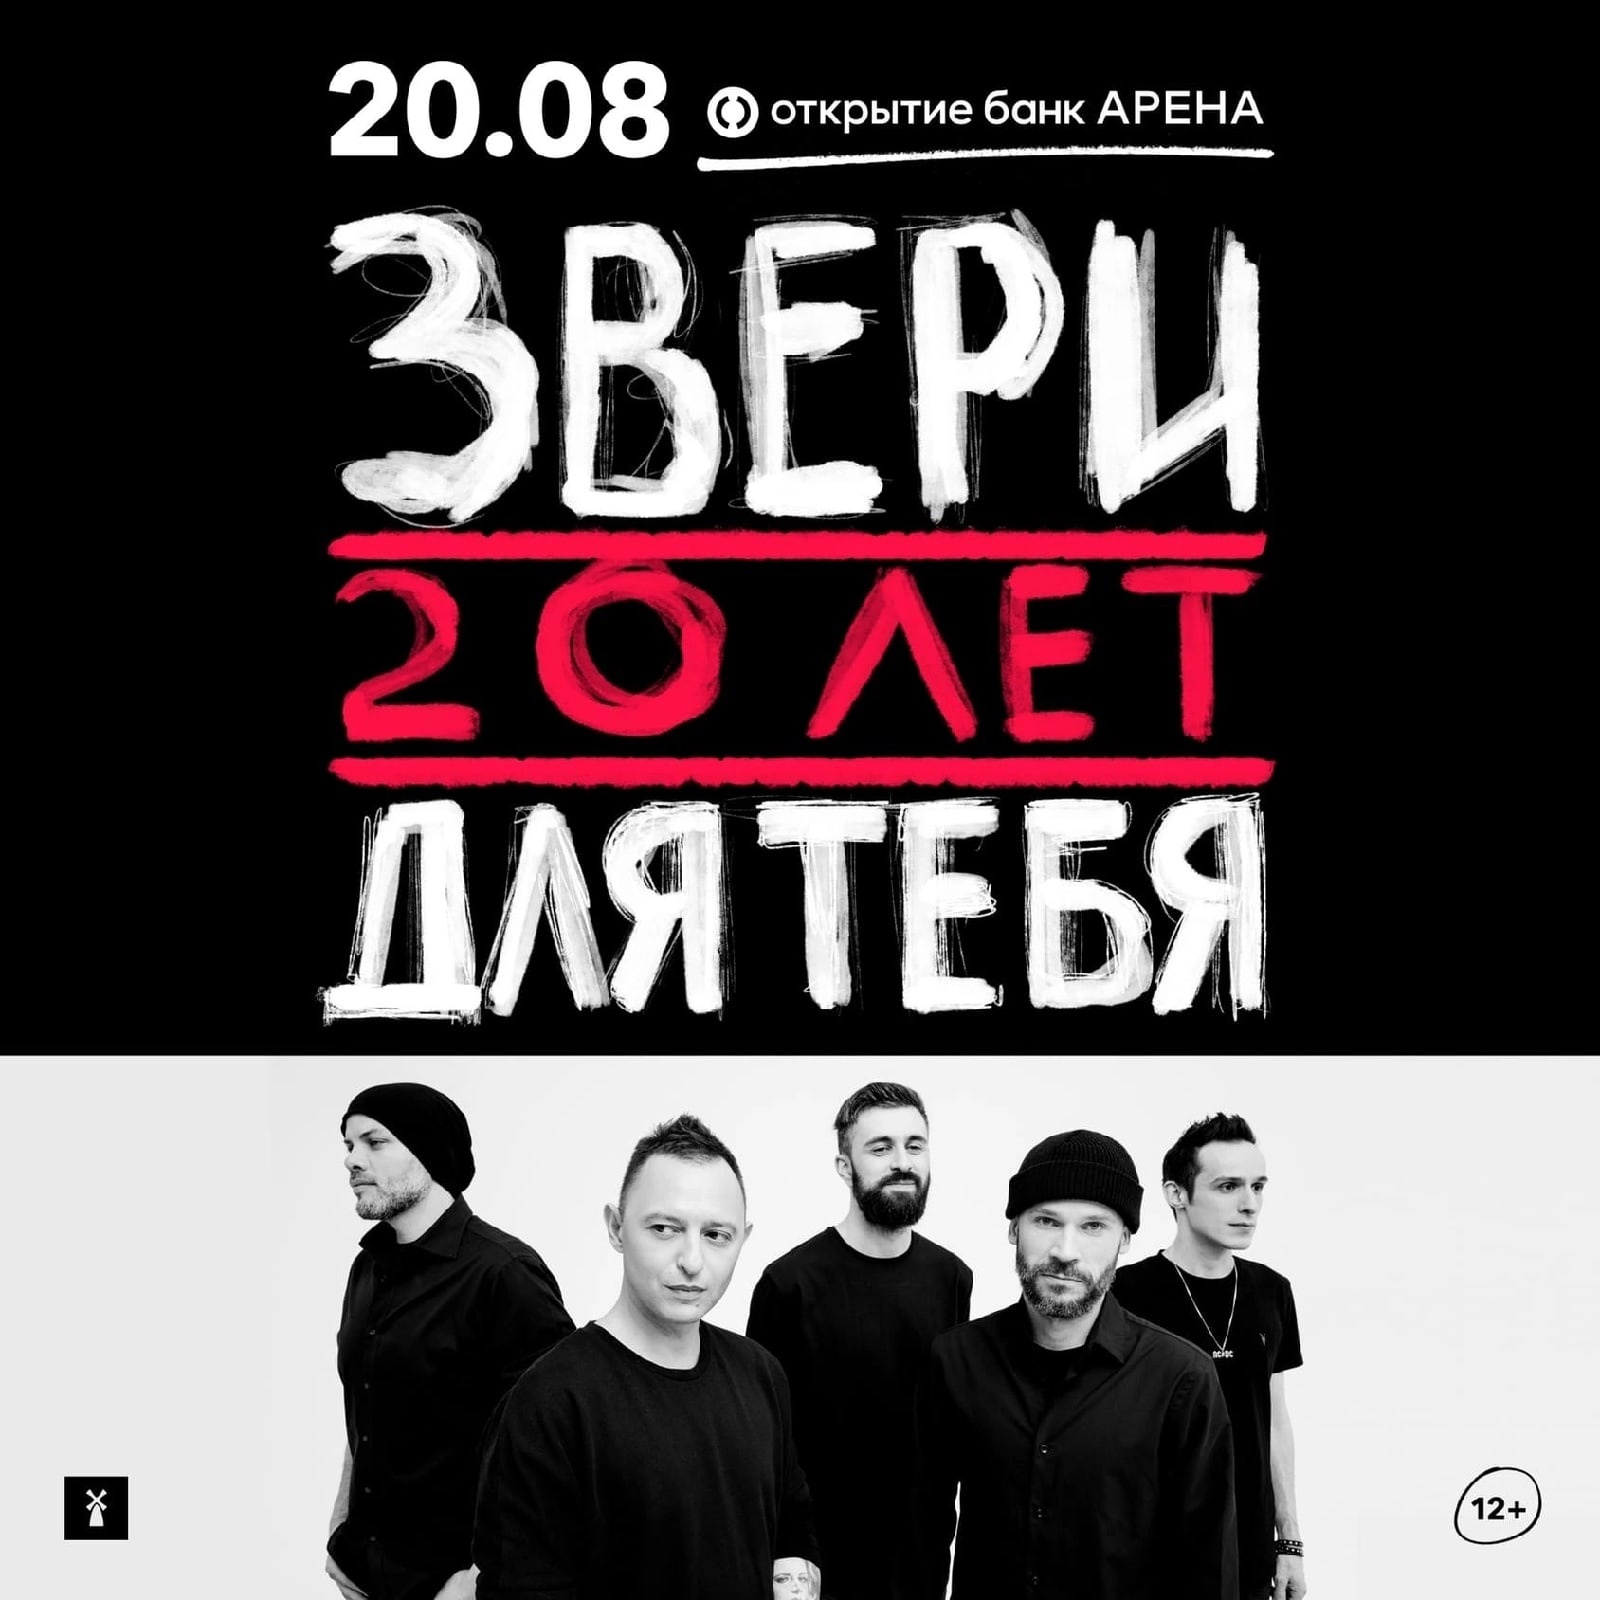 Звери отметили 20-летие стадионным концертом в Москве